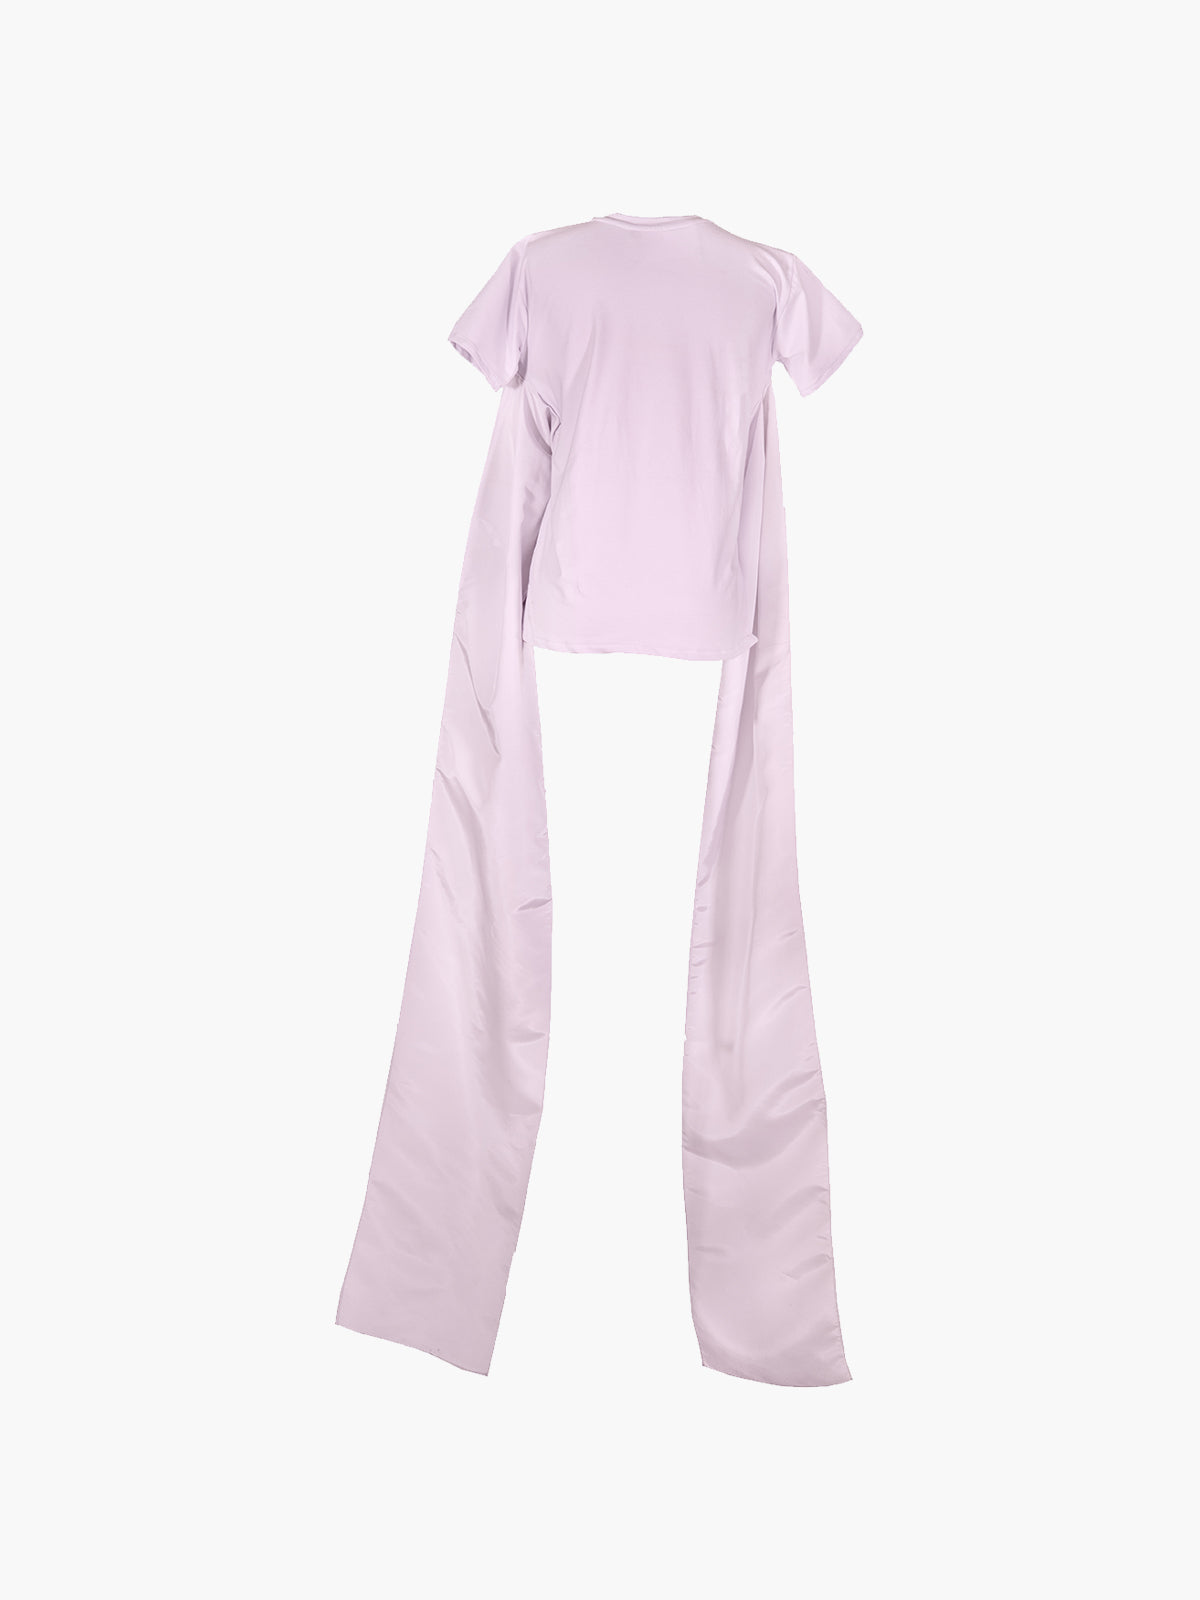 La Victoria T-Shirt | Lilac